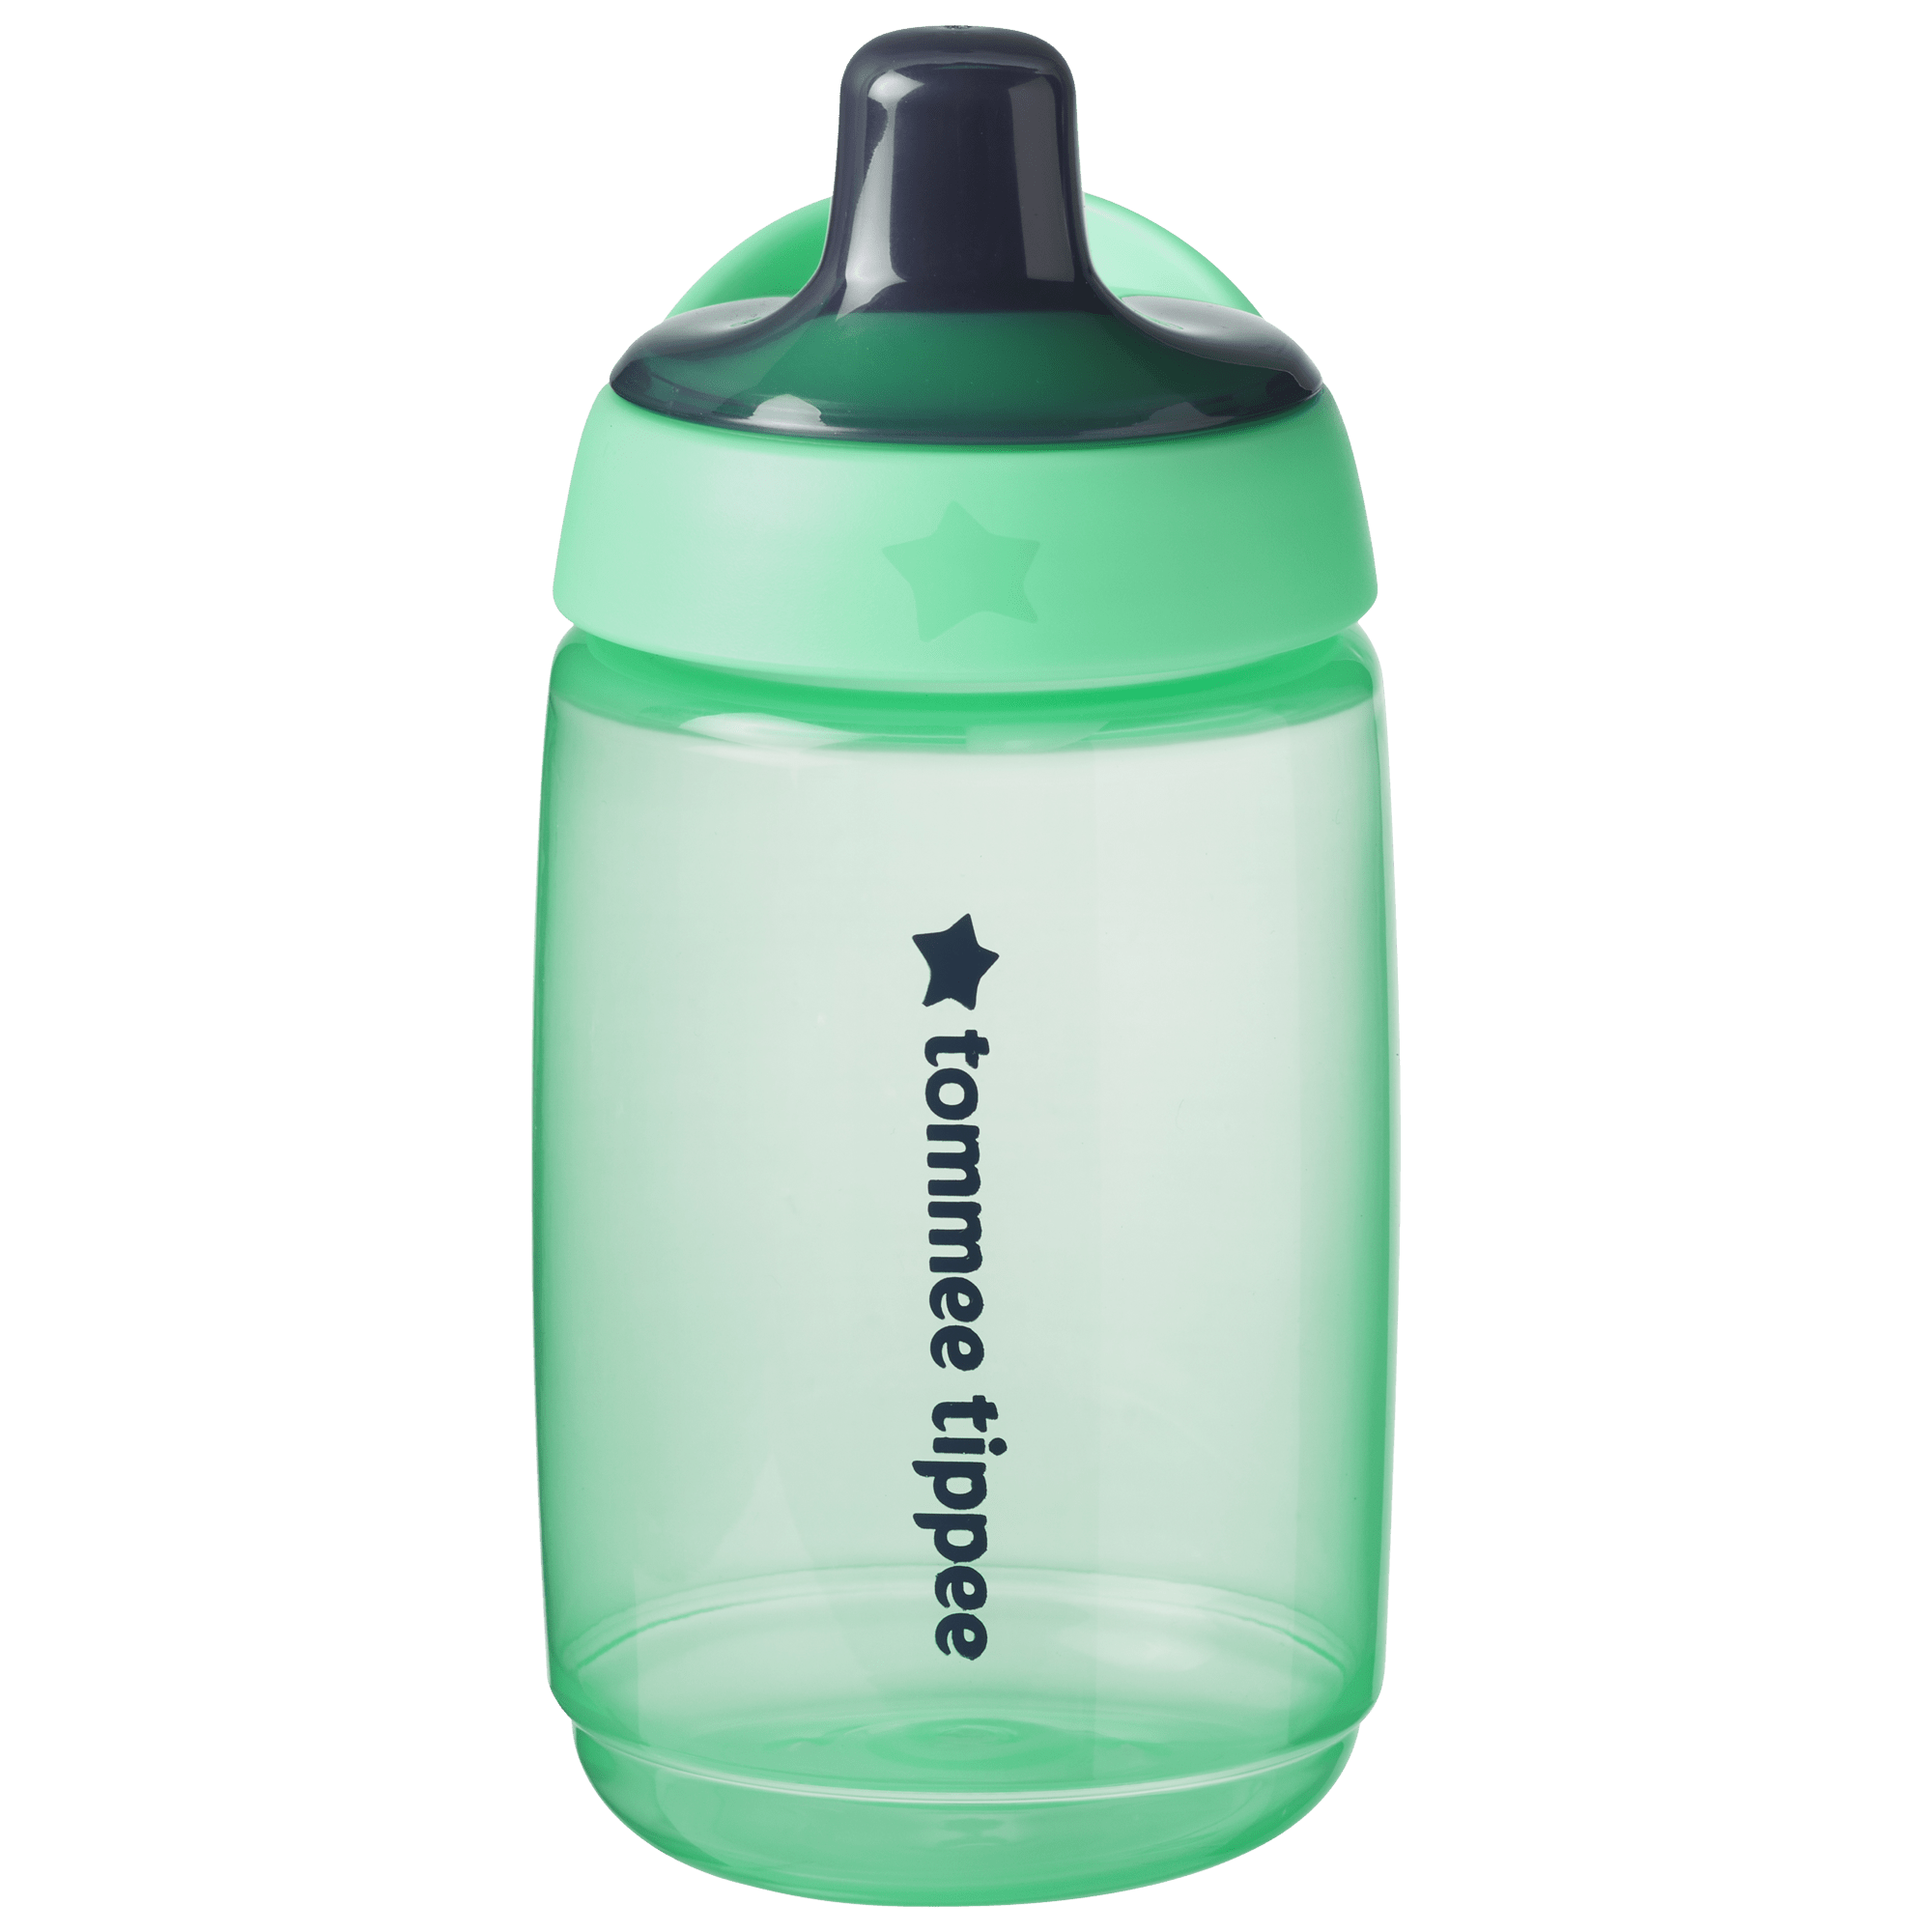 Green water bottle